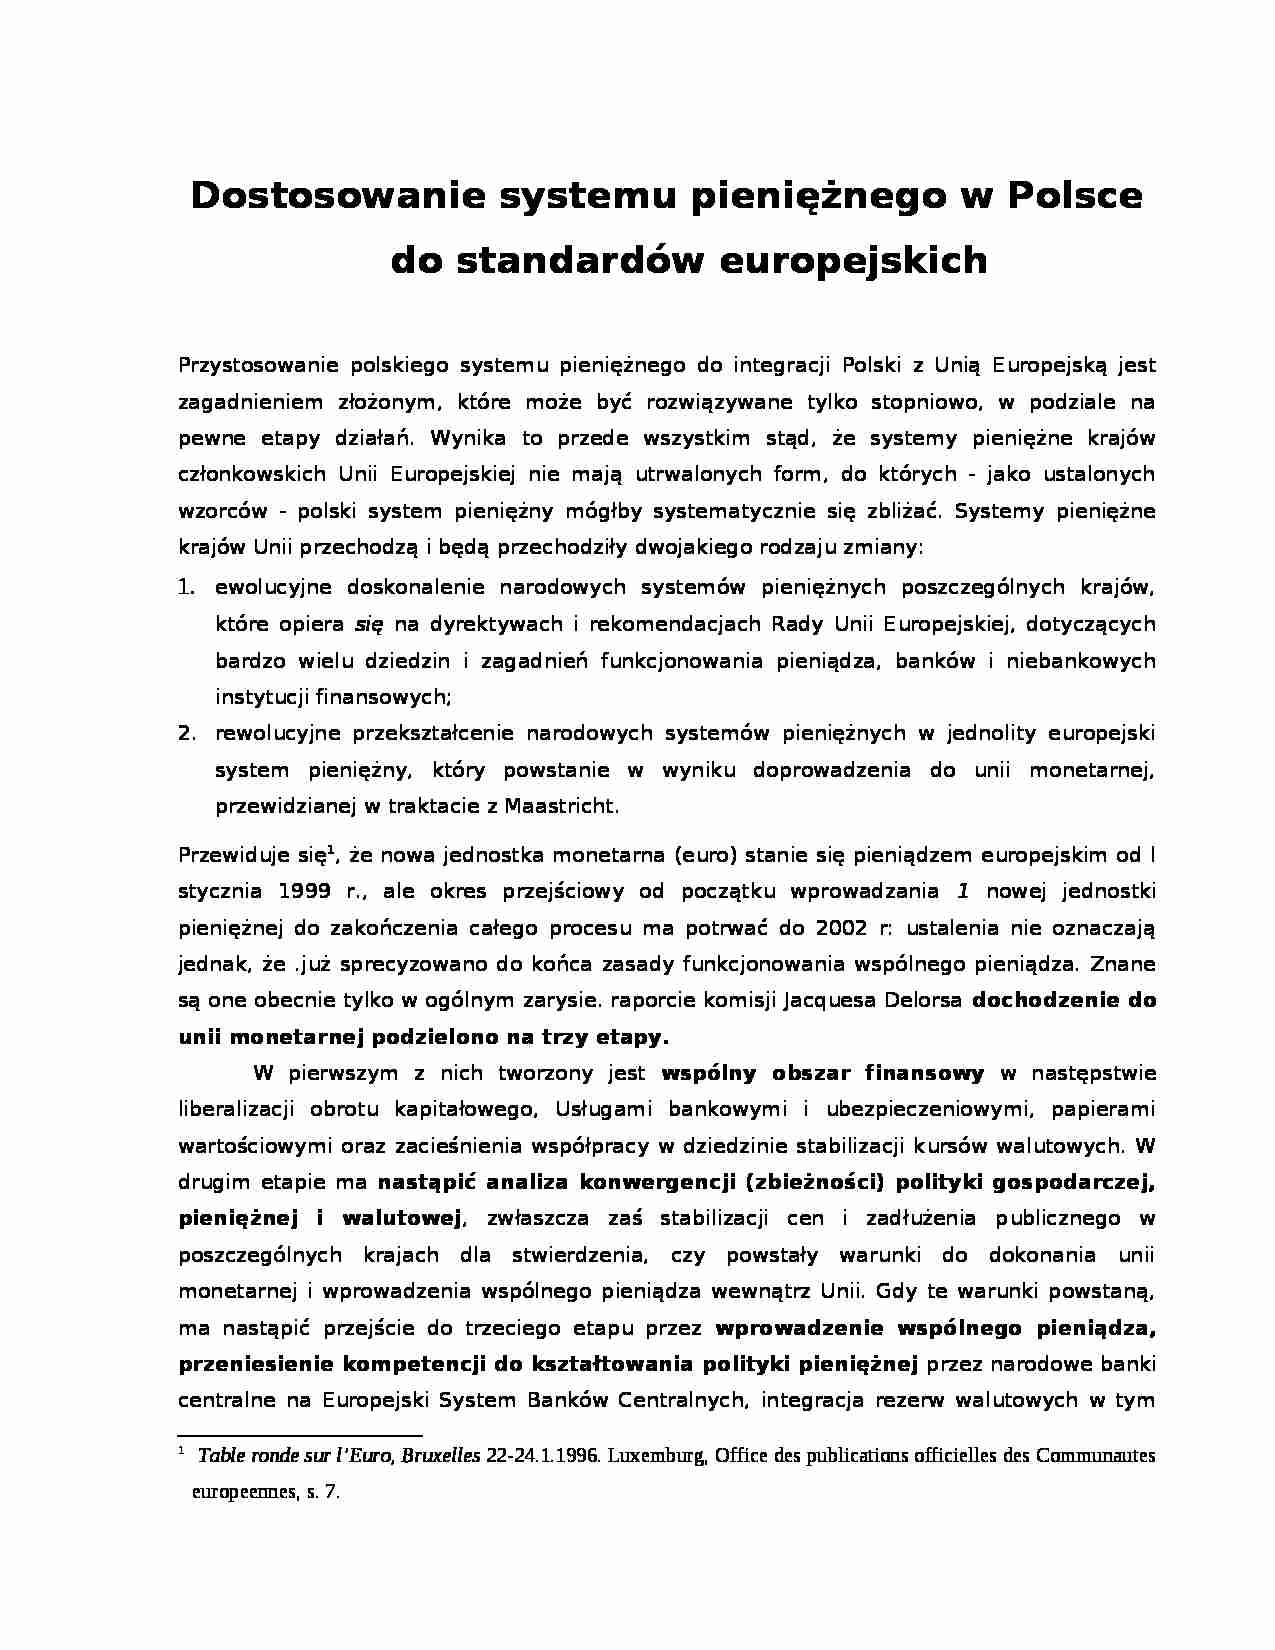 Dostosowanie systemu pieniężnego w Polsce do standardów europejwskich - strona 1